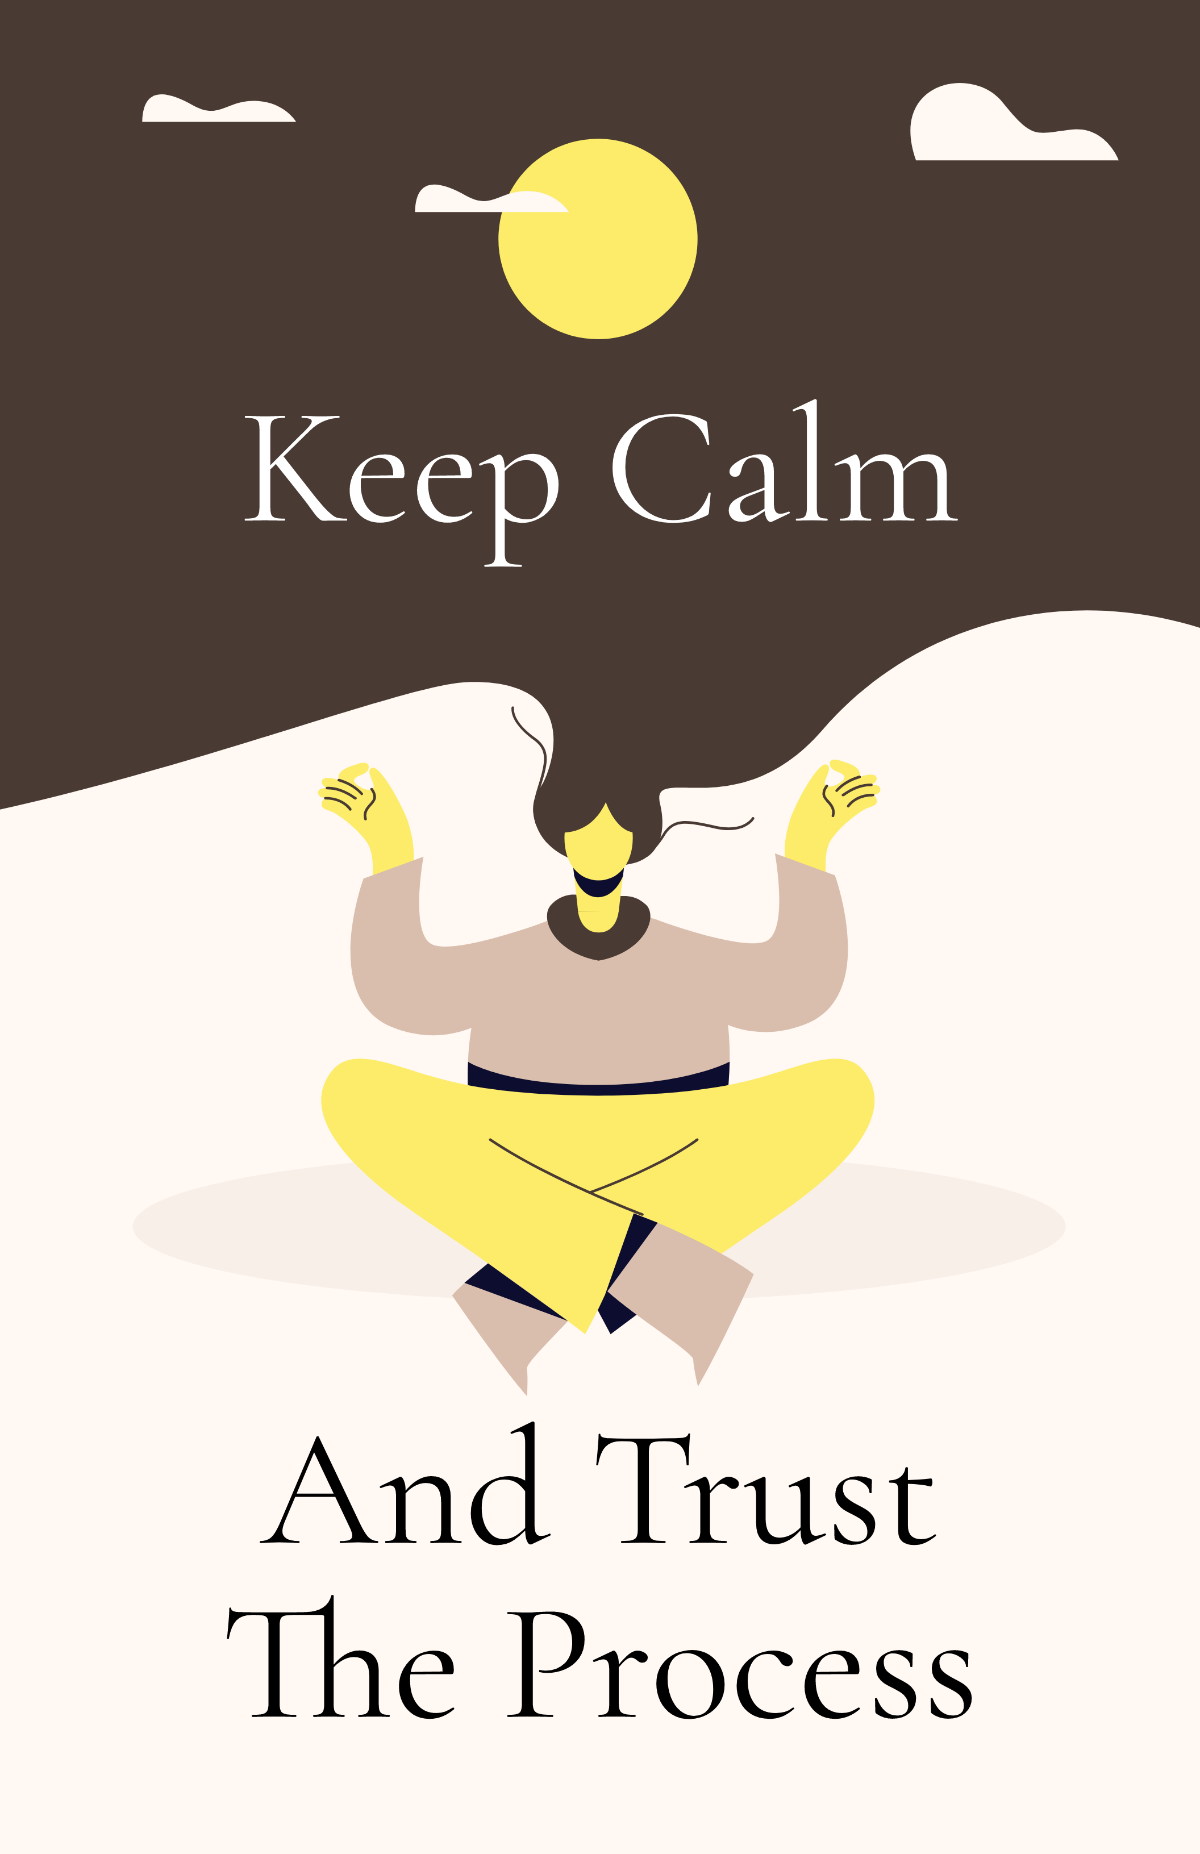 Keep Calm Motivational Poster